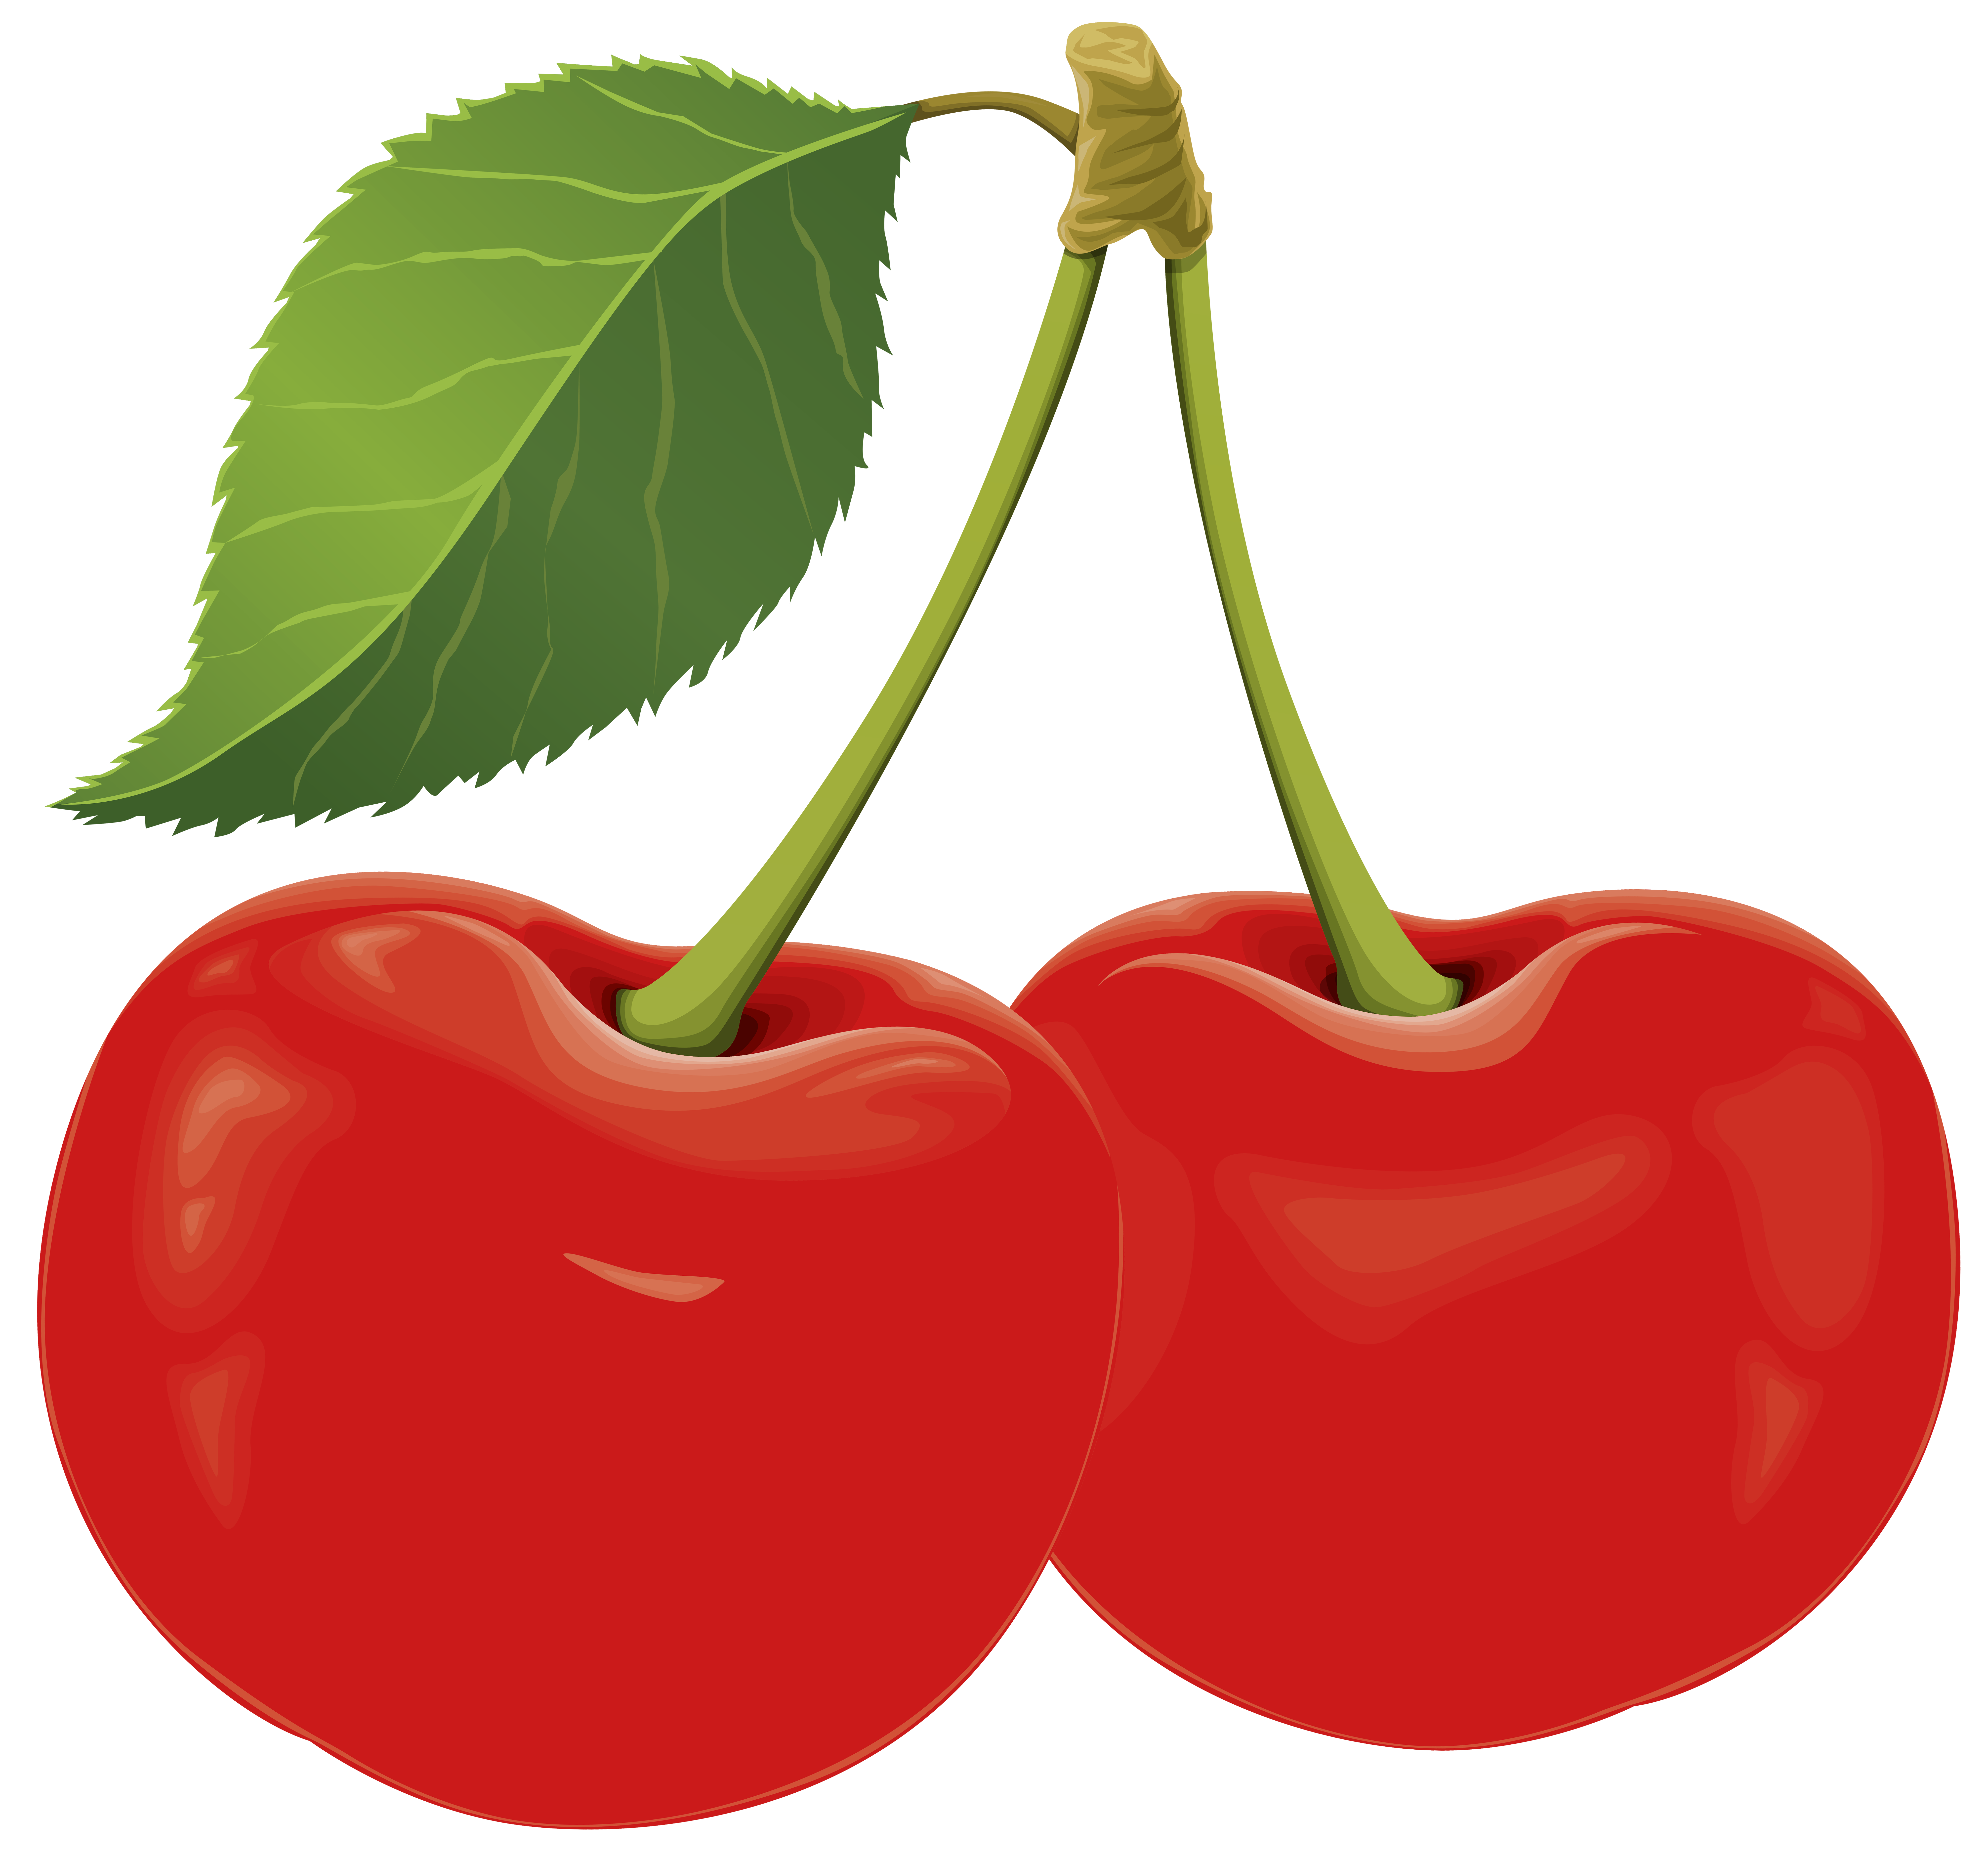 Sour Cherry PNG Clip Art - Best WEB Clipart